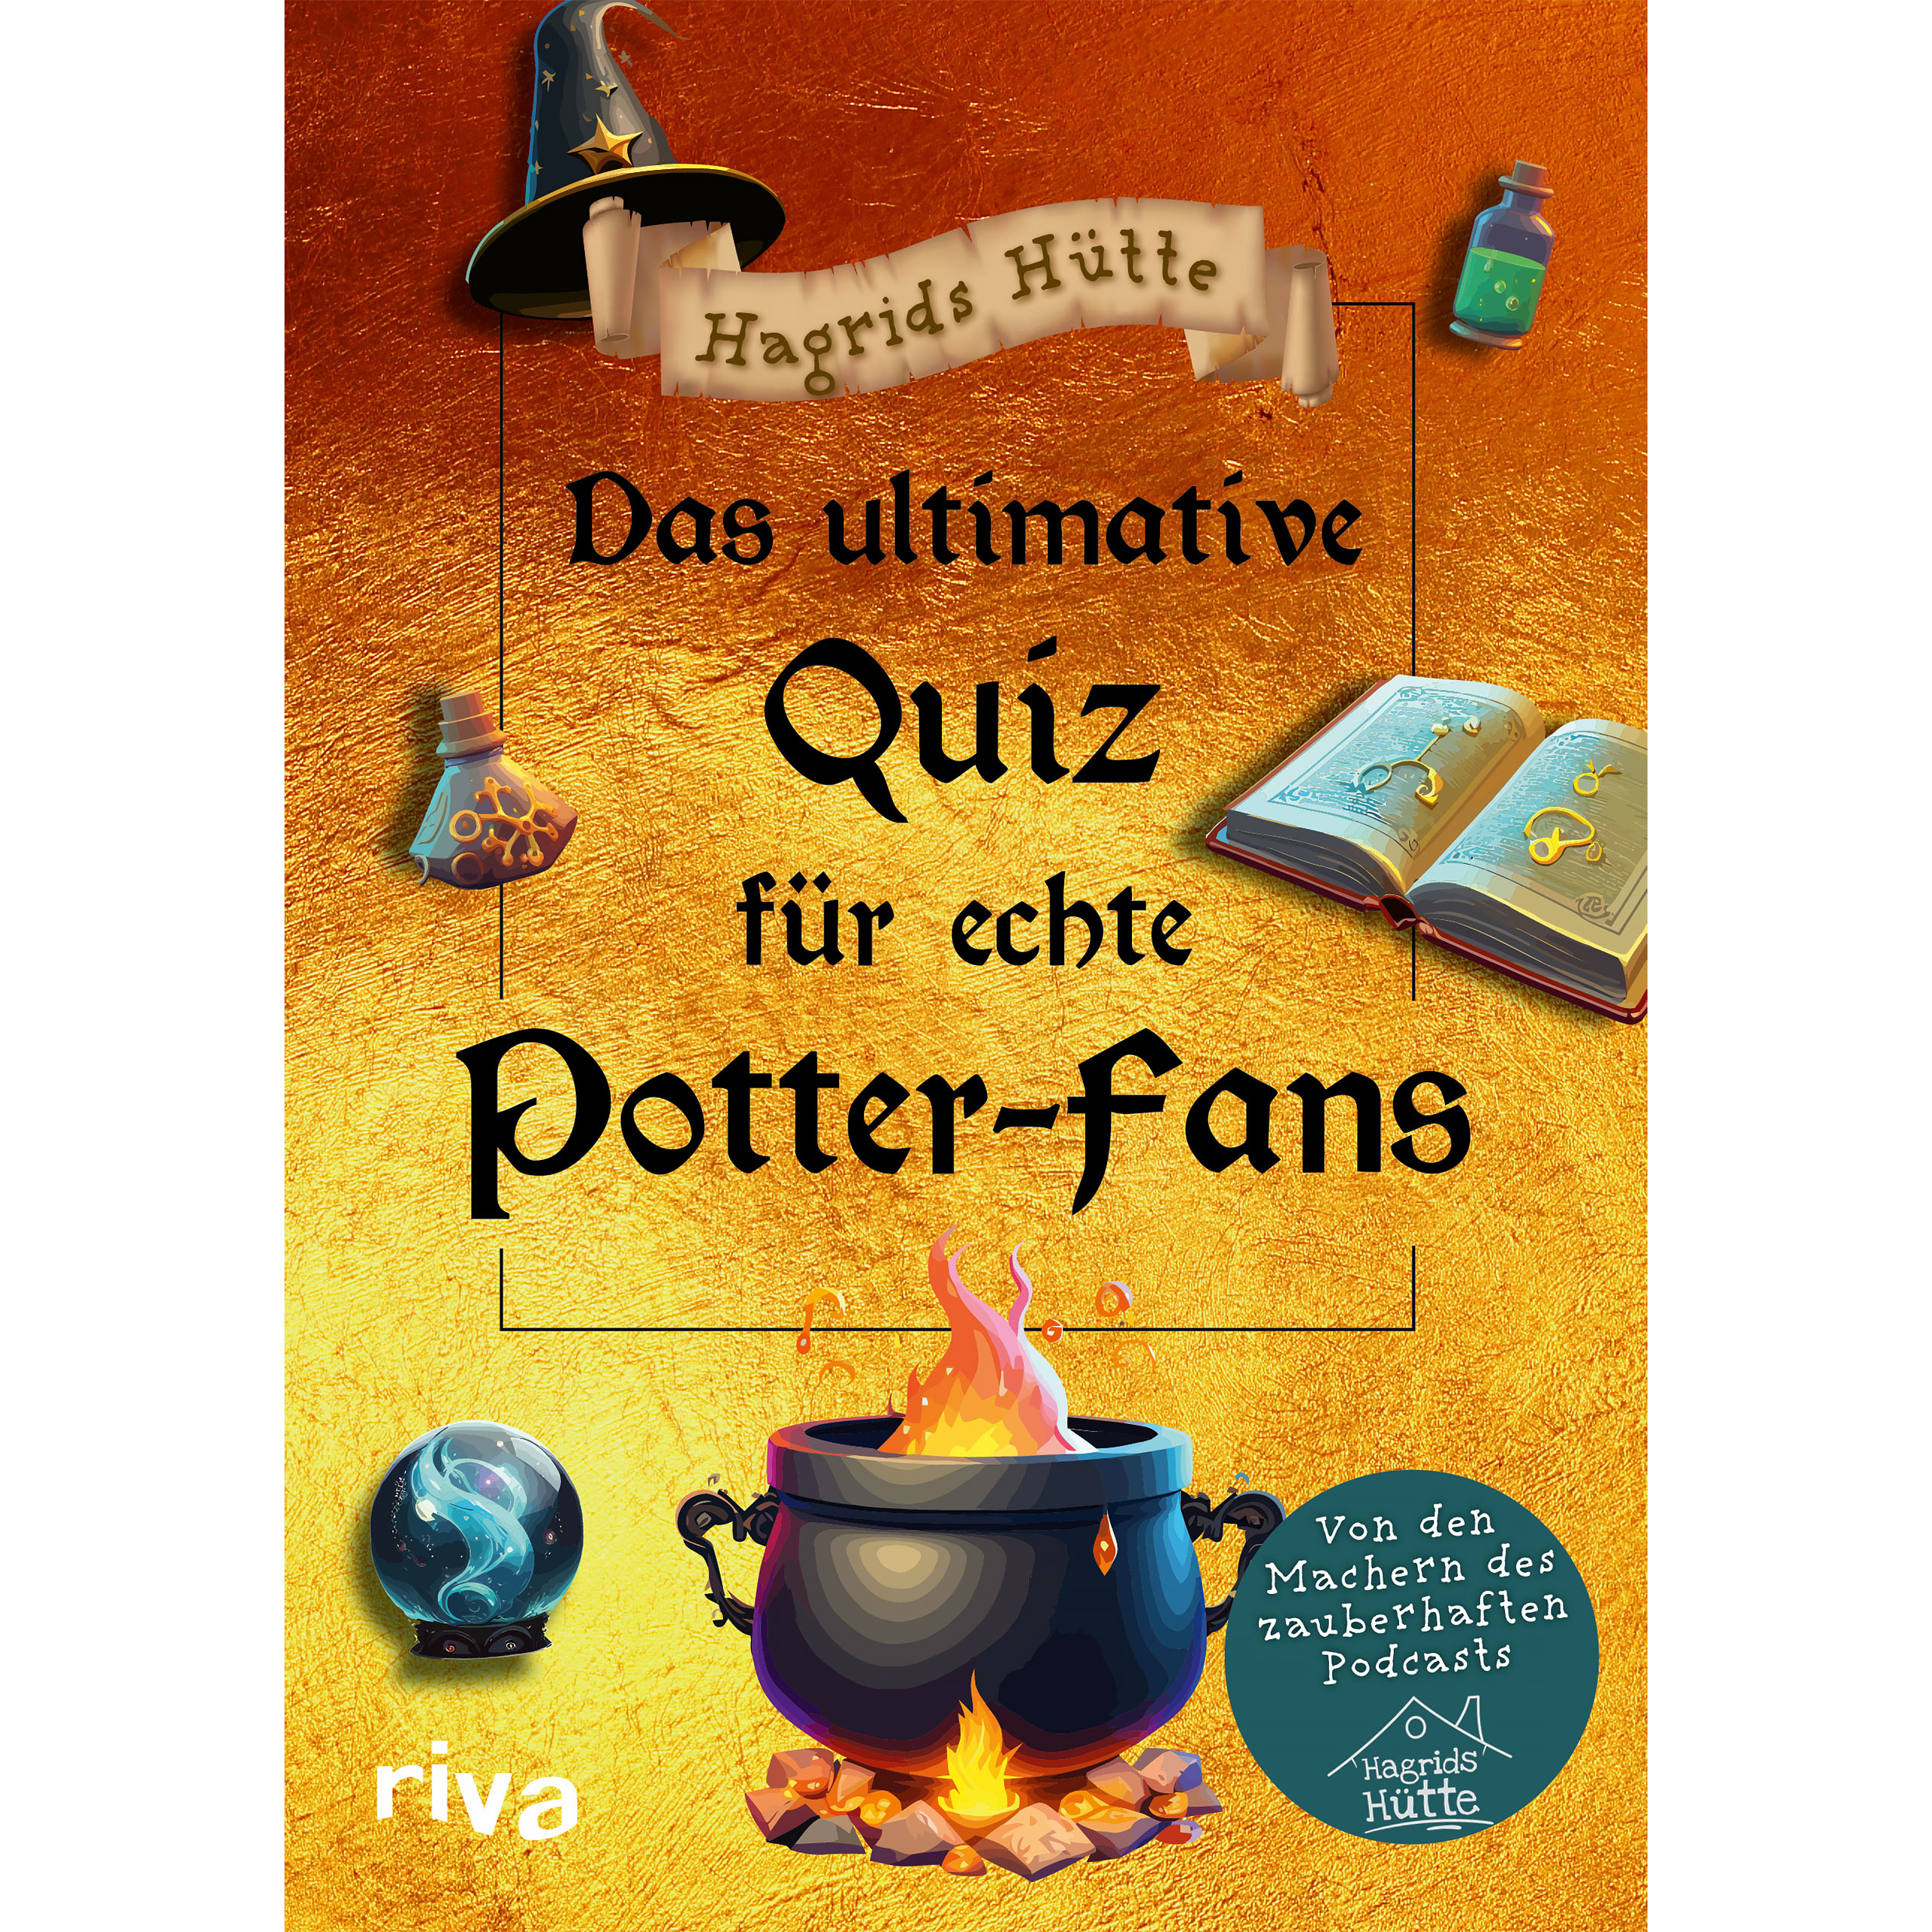 De ultieme quiz voor echte Potter-fans